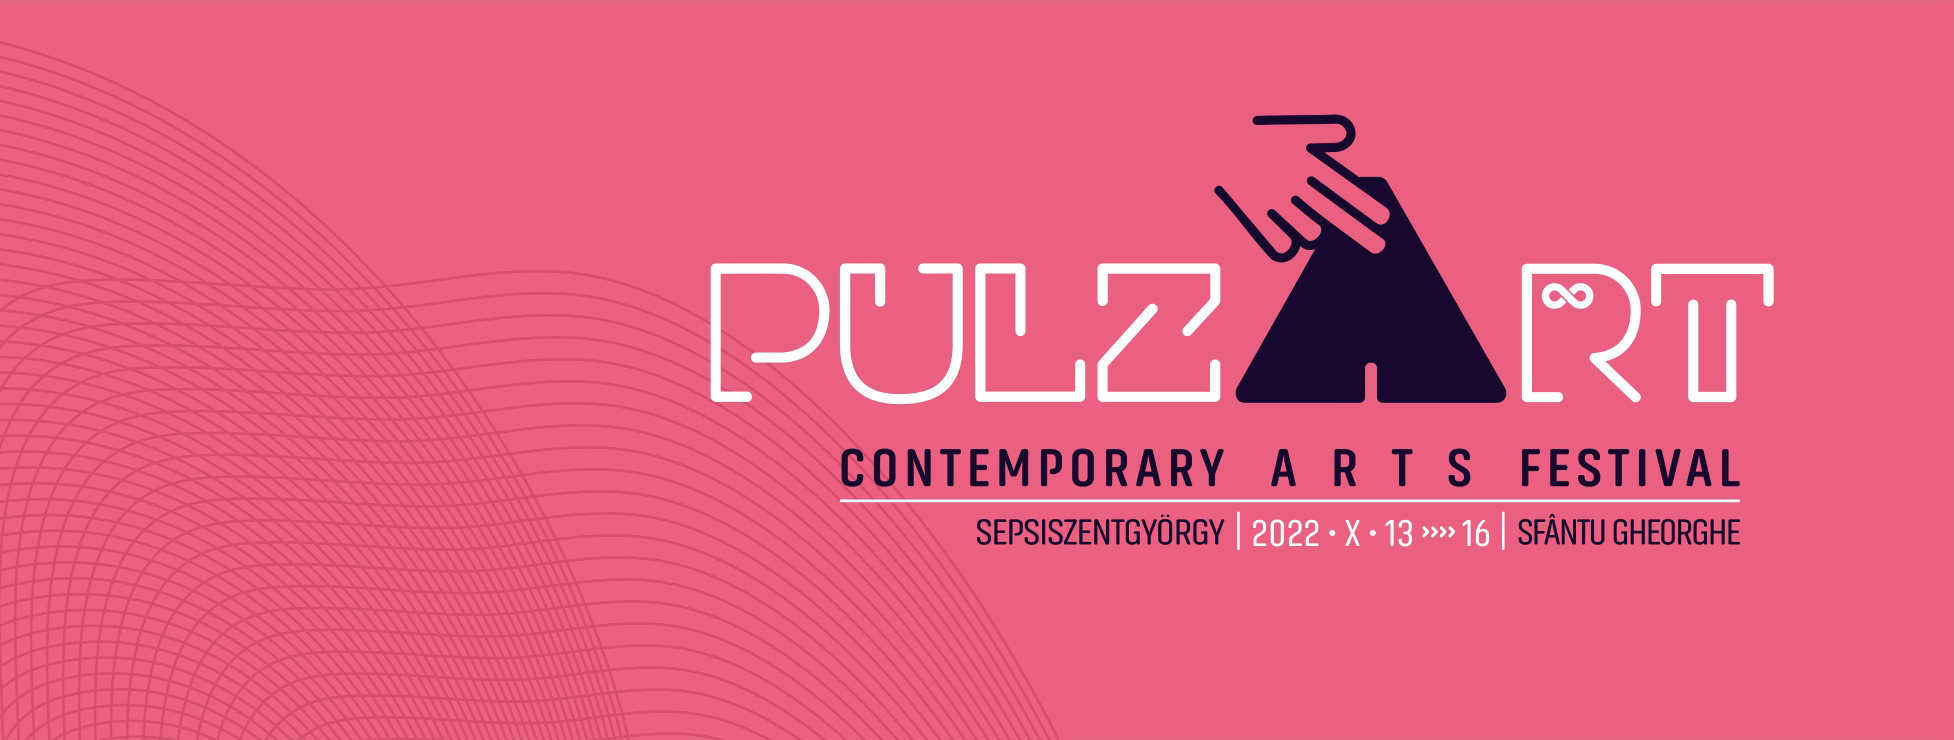 PulzArt - Kortárs művészeti fesztivál